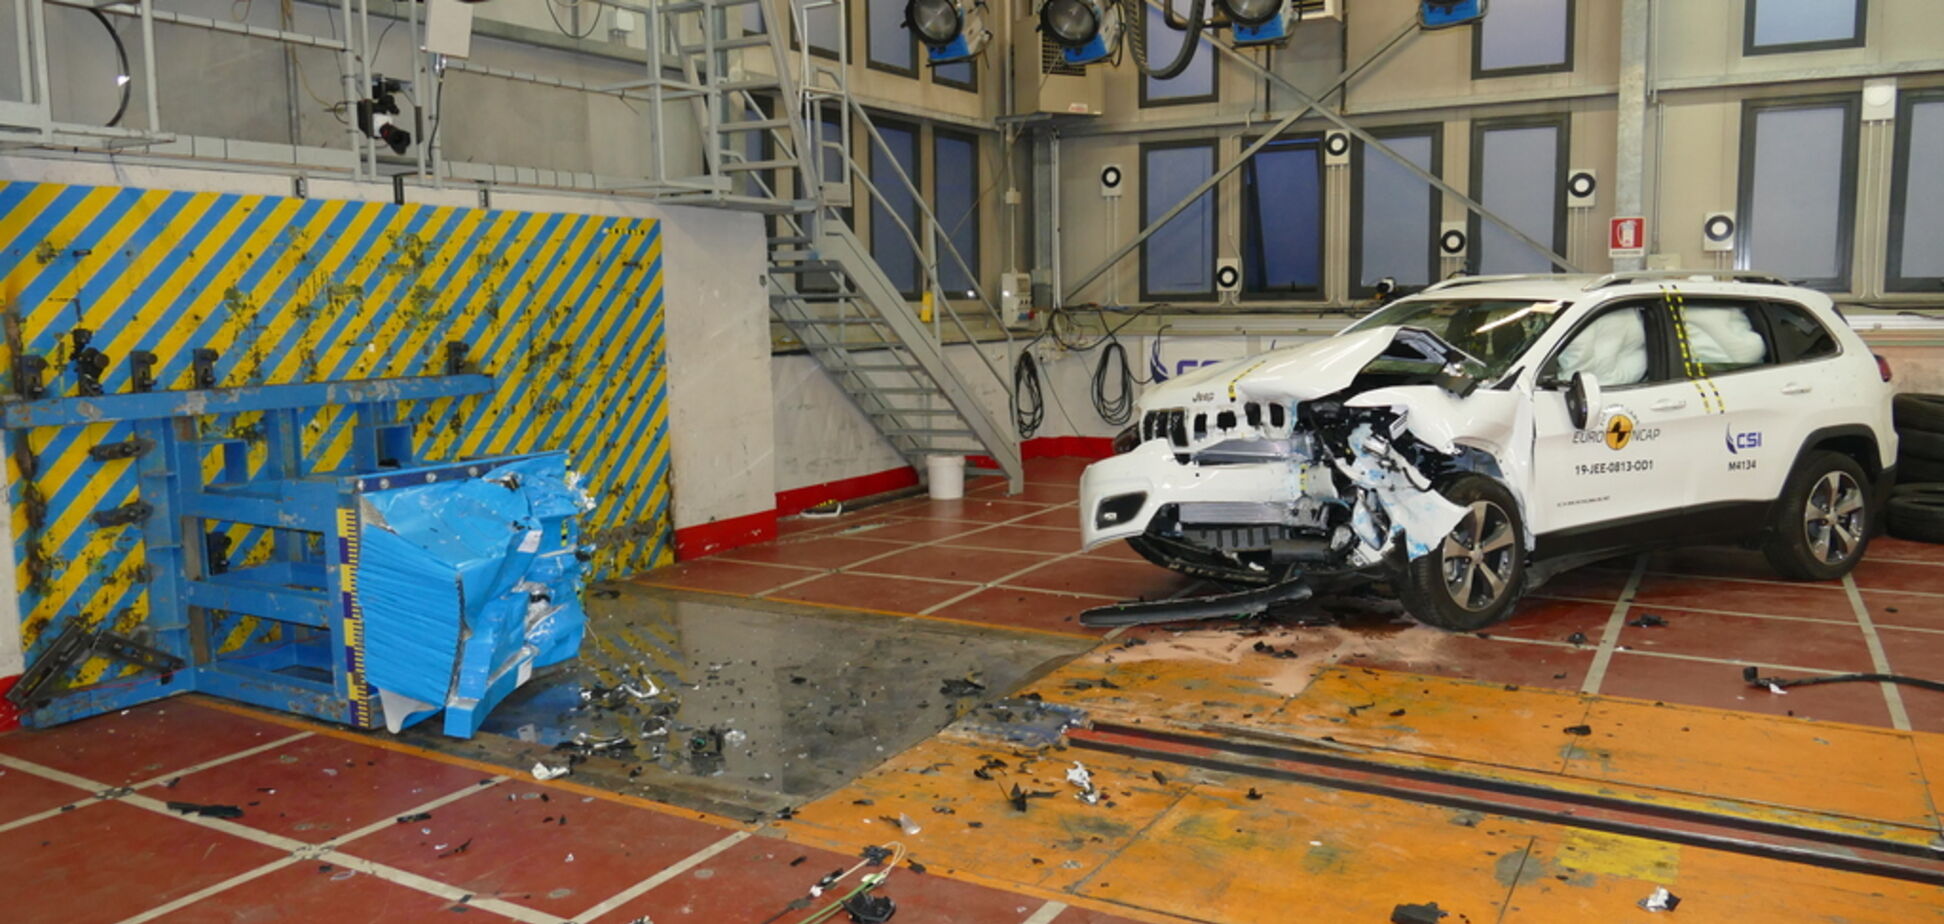 Хорошисти і відмінники: подробиці нових краш-тестів Euro NCAP